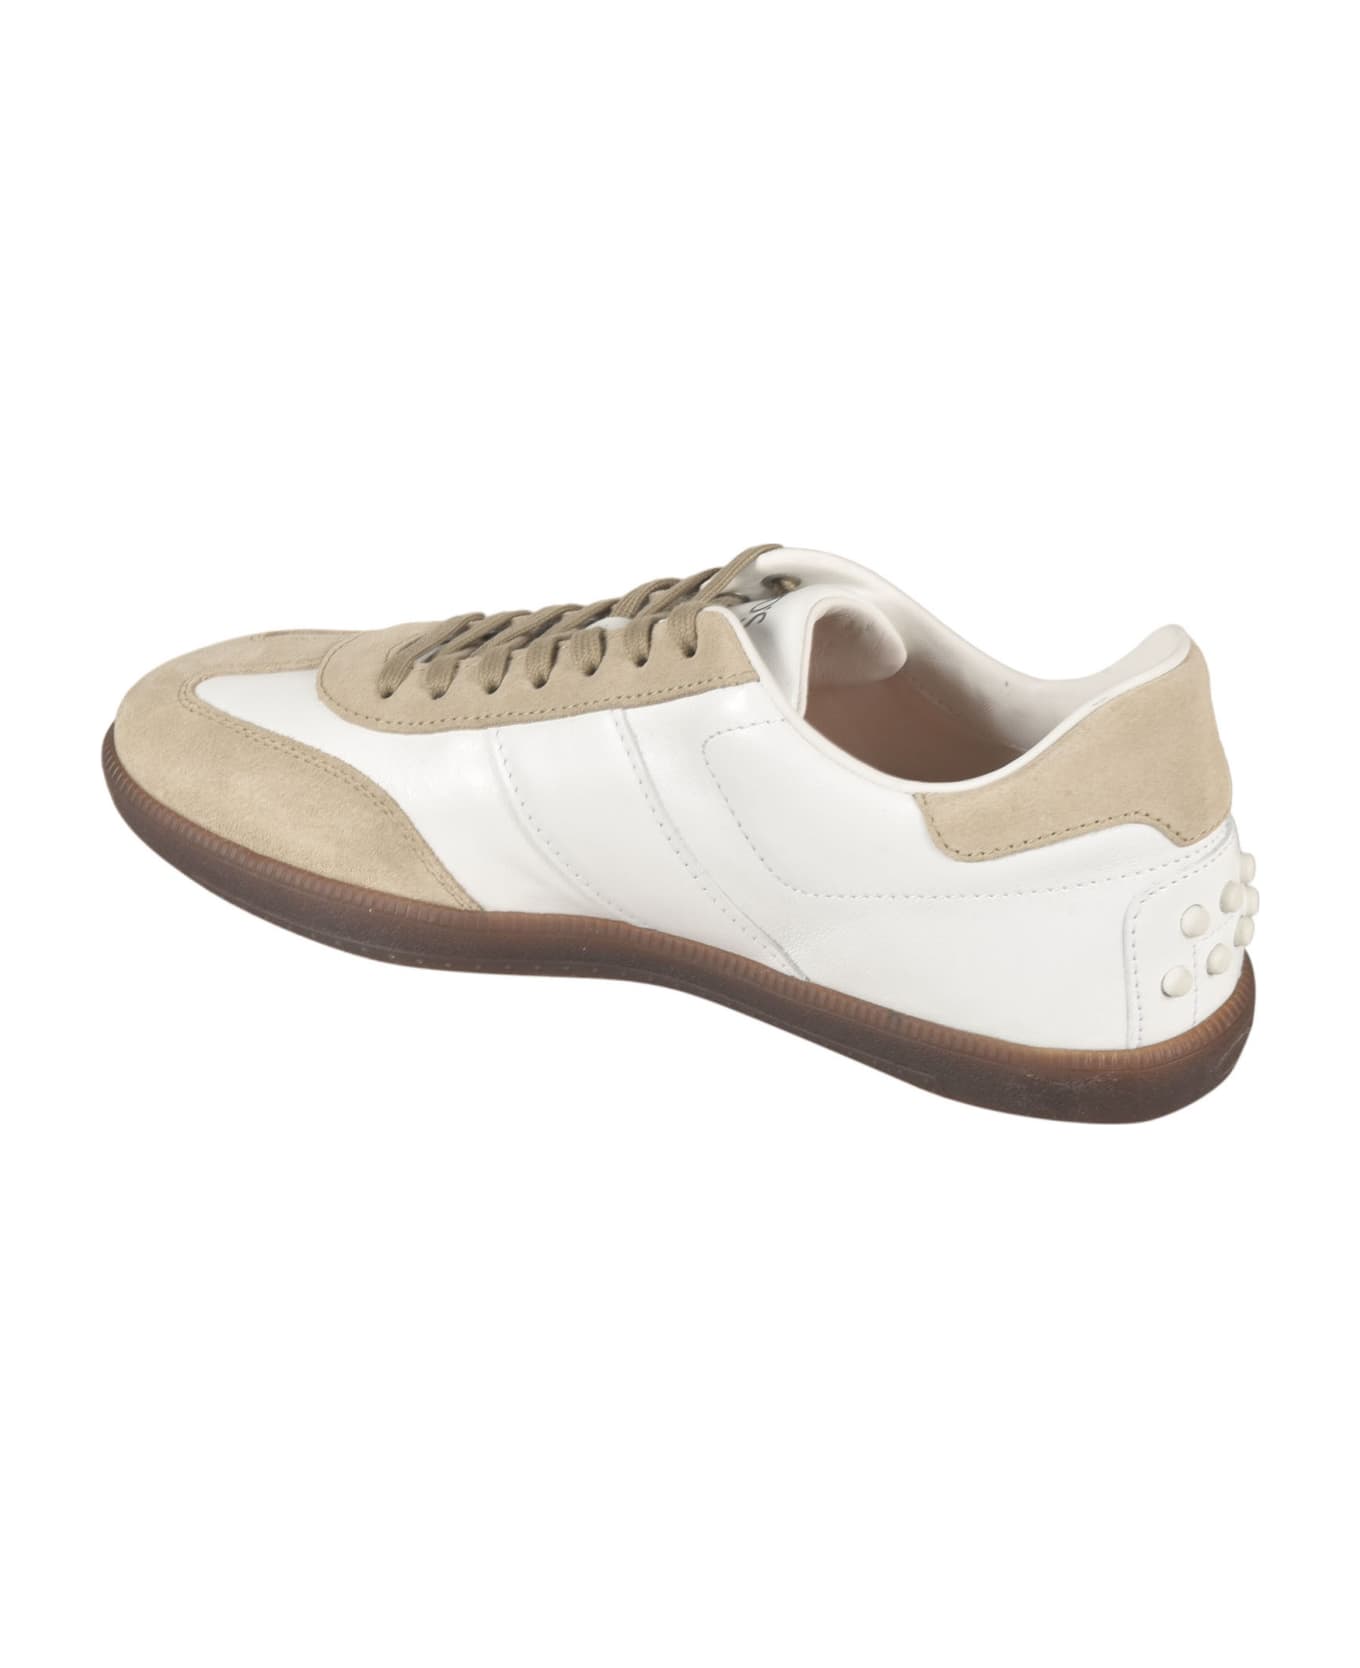 Tod's Cassetta 68c Sneakers - White スニーカー